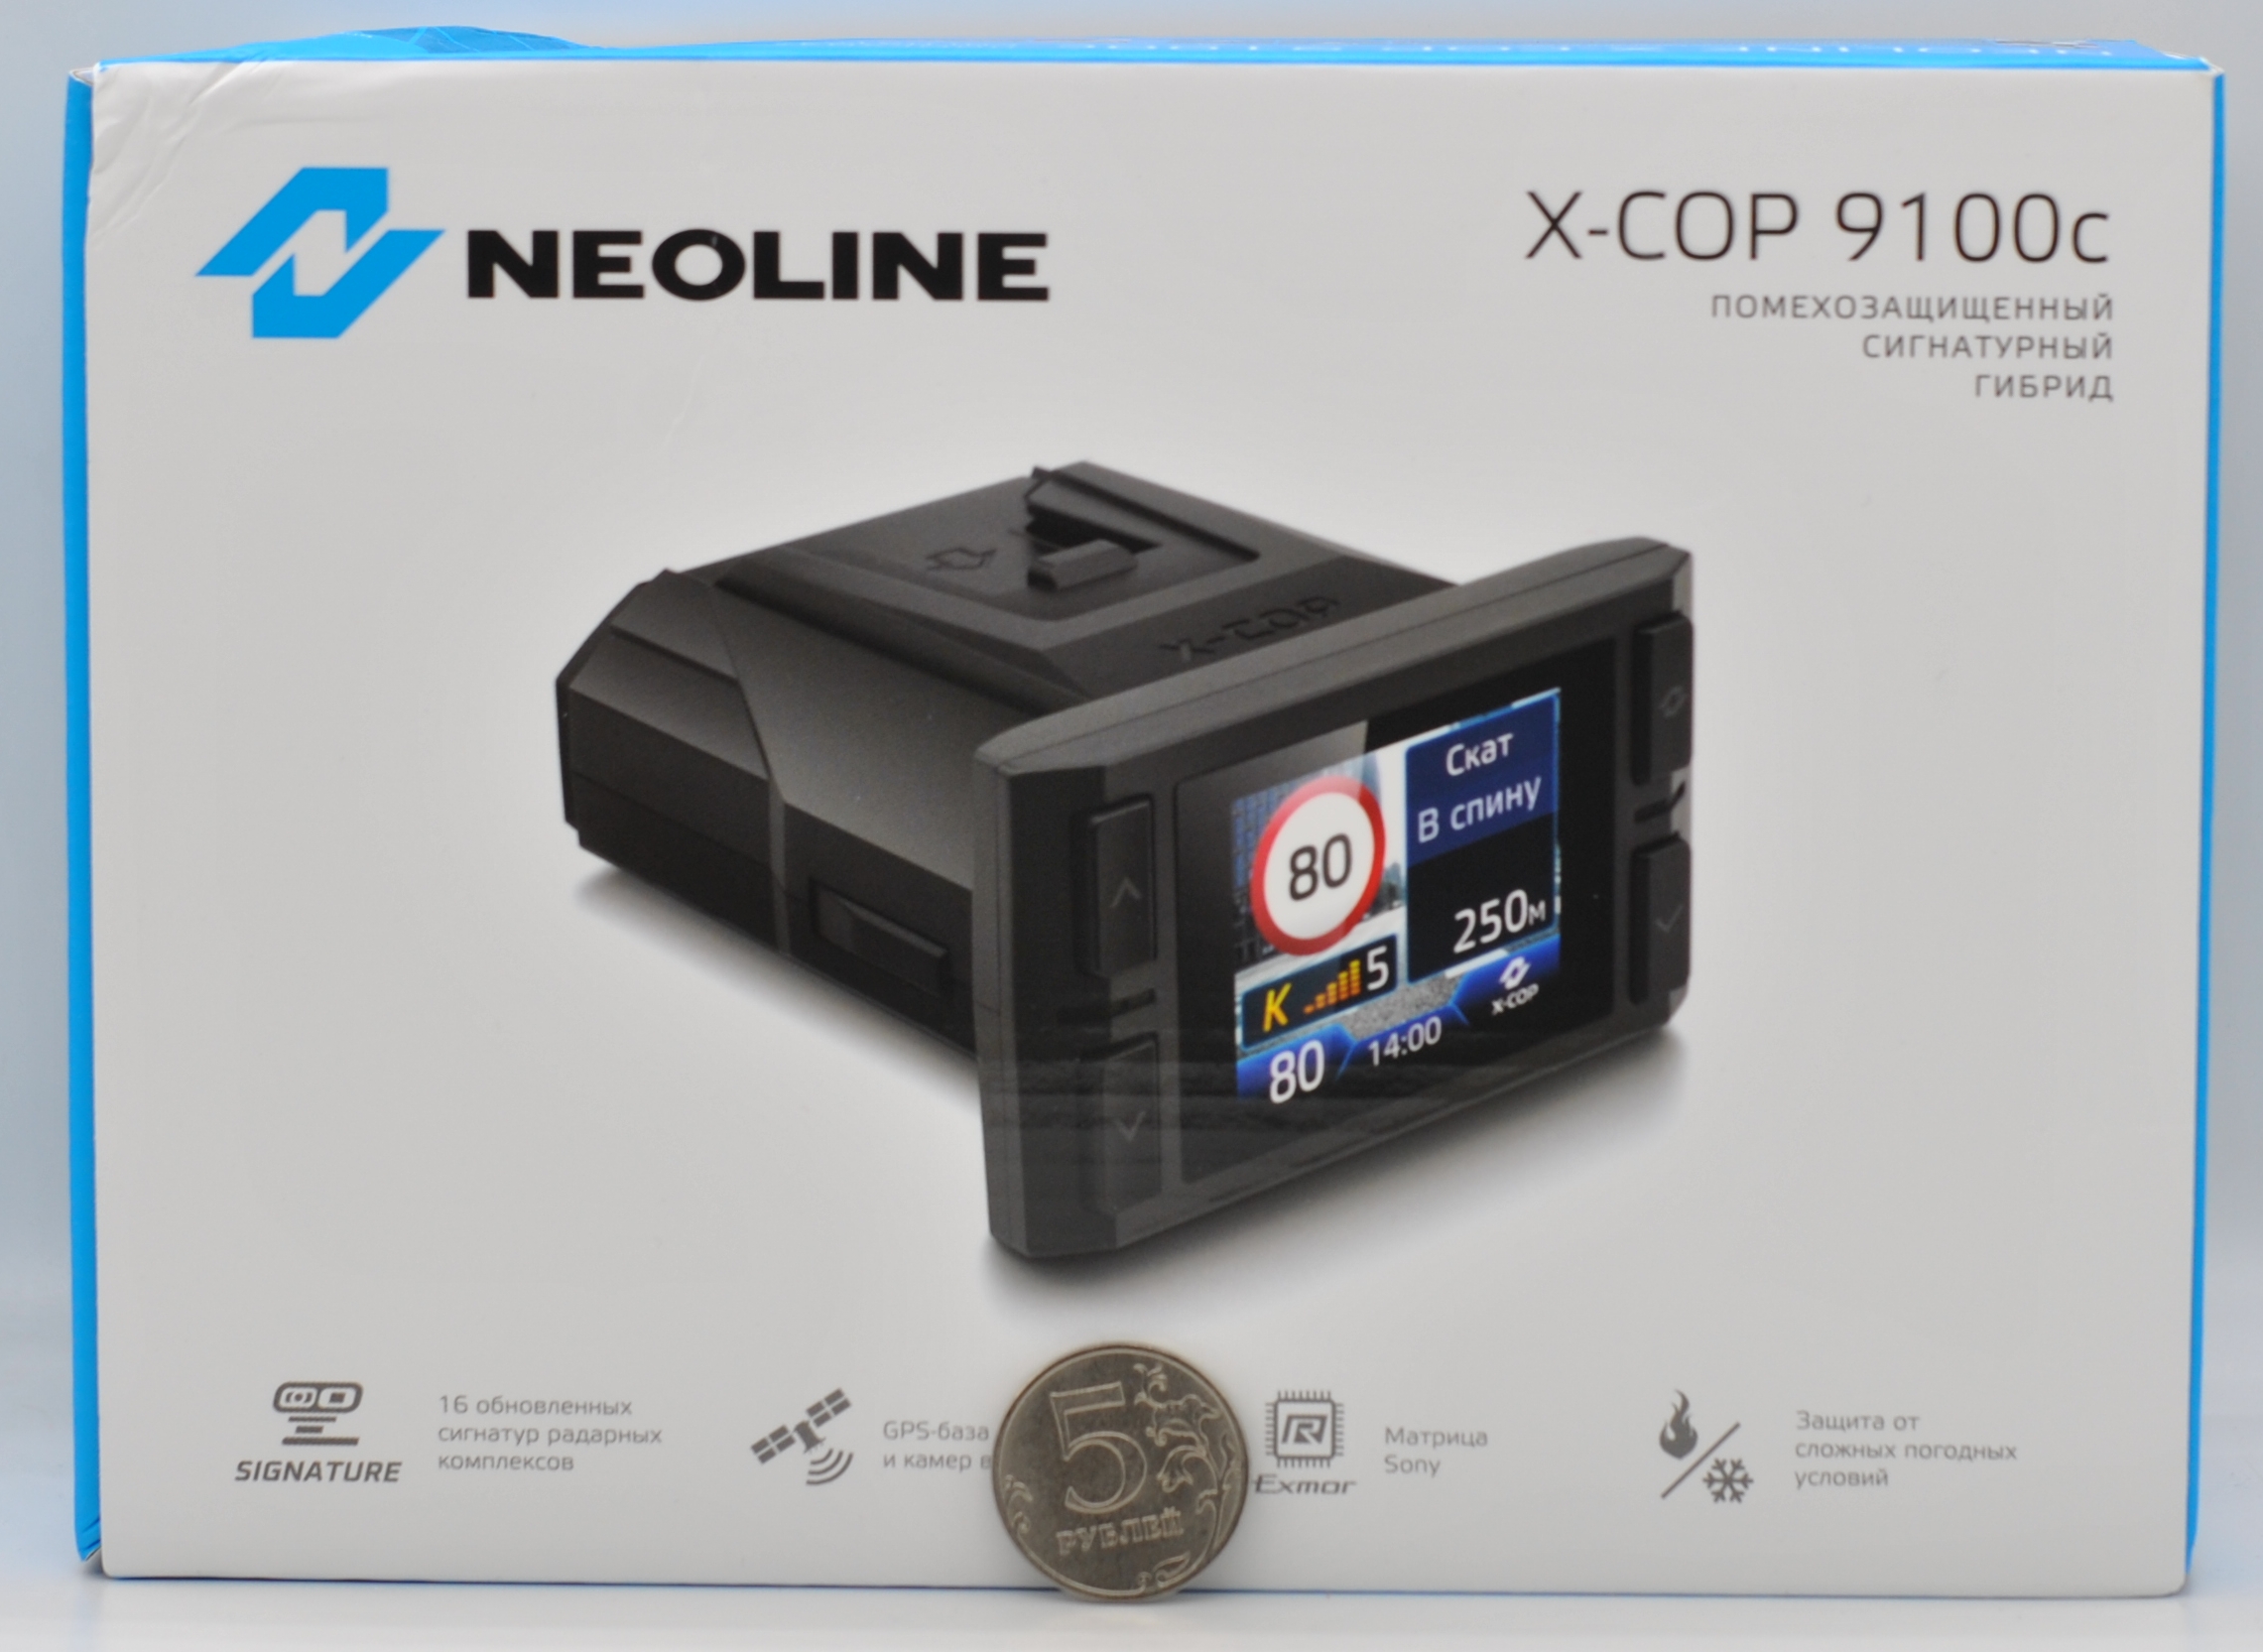 Neoline x-cop 9100x. X-cop 6000c. Где на коробке находится серийный номер устройства гибрила Neoline xcop 9100z.